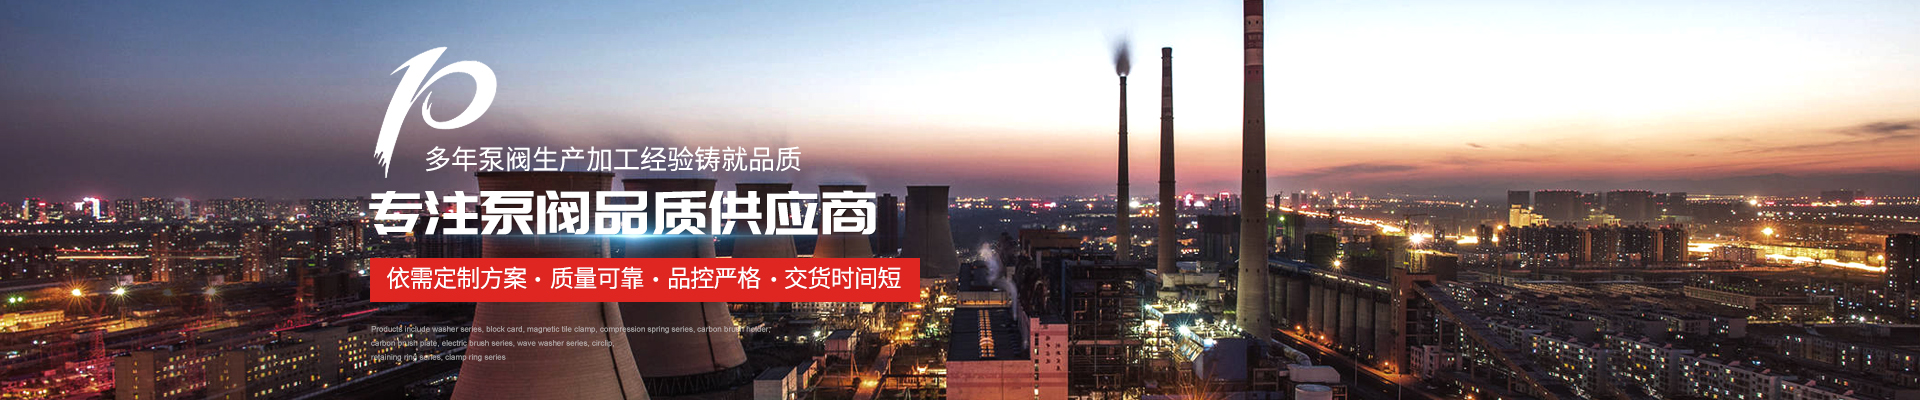 多級泵廠家 - 上海高適泵閥有限公司